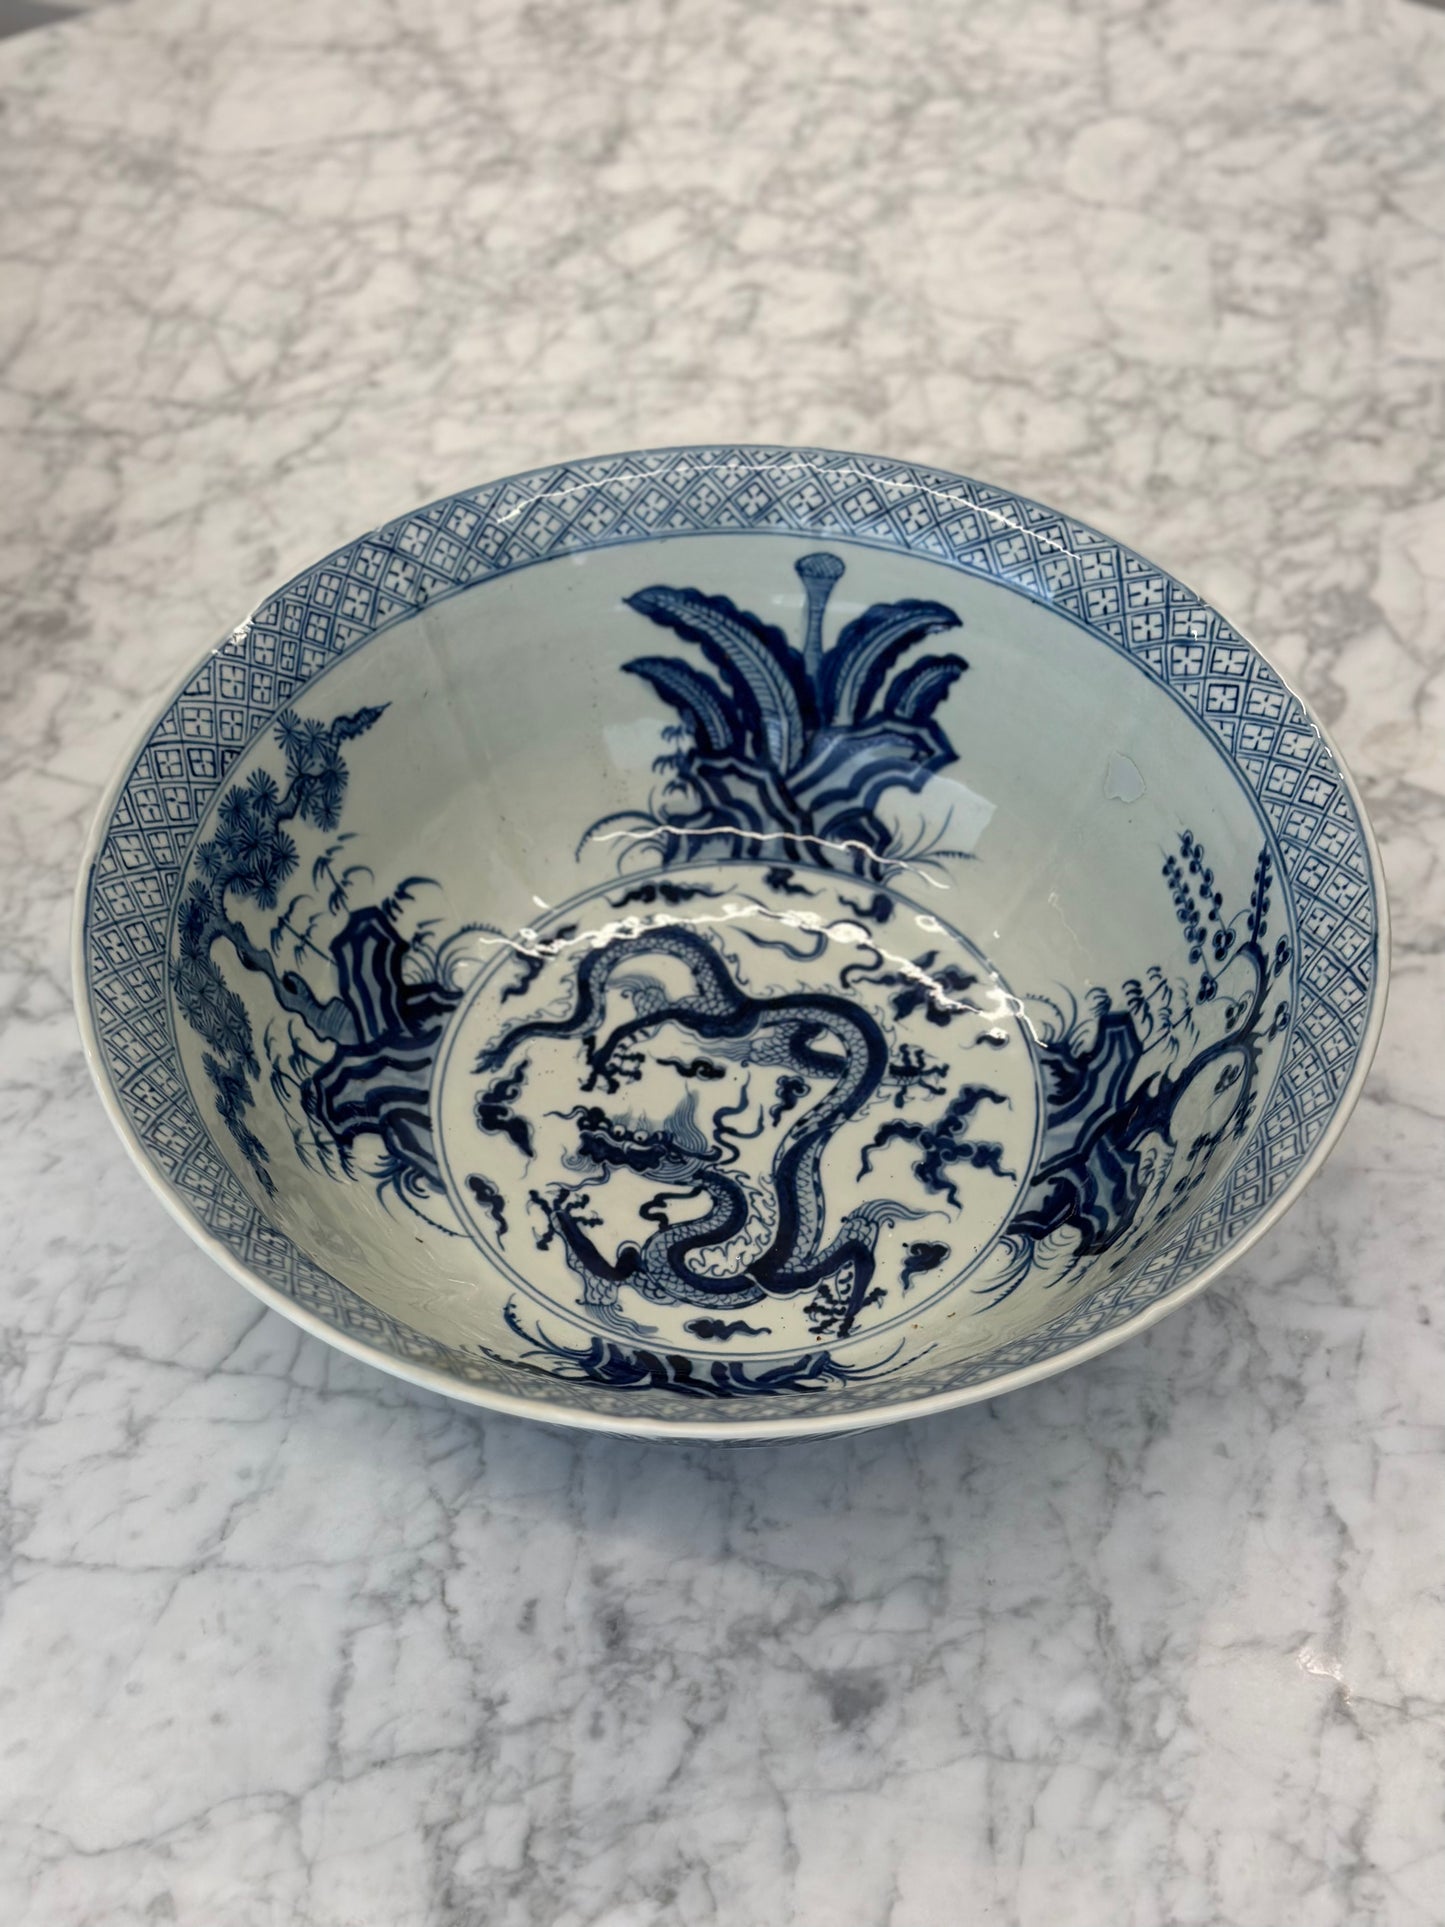 One of a Kind - Antique Blue Porcelain Bowl, 16" d x 16" w x 6.5" t